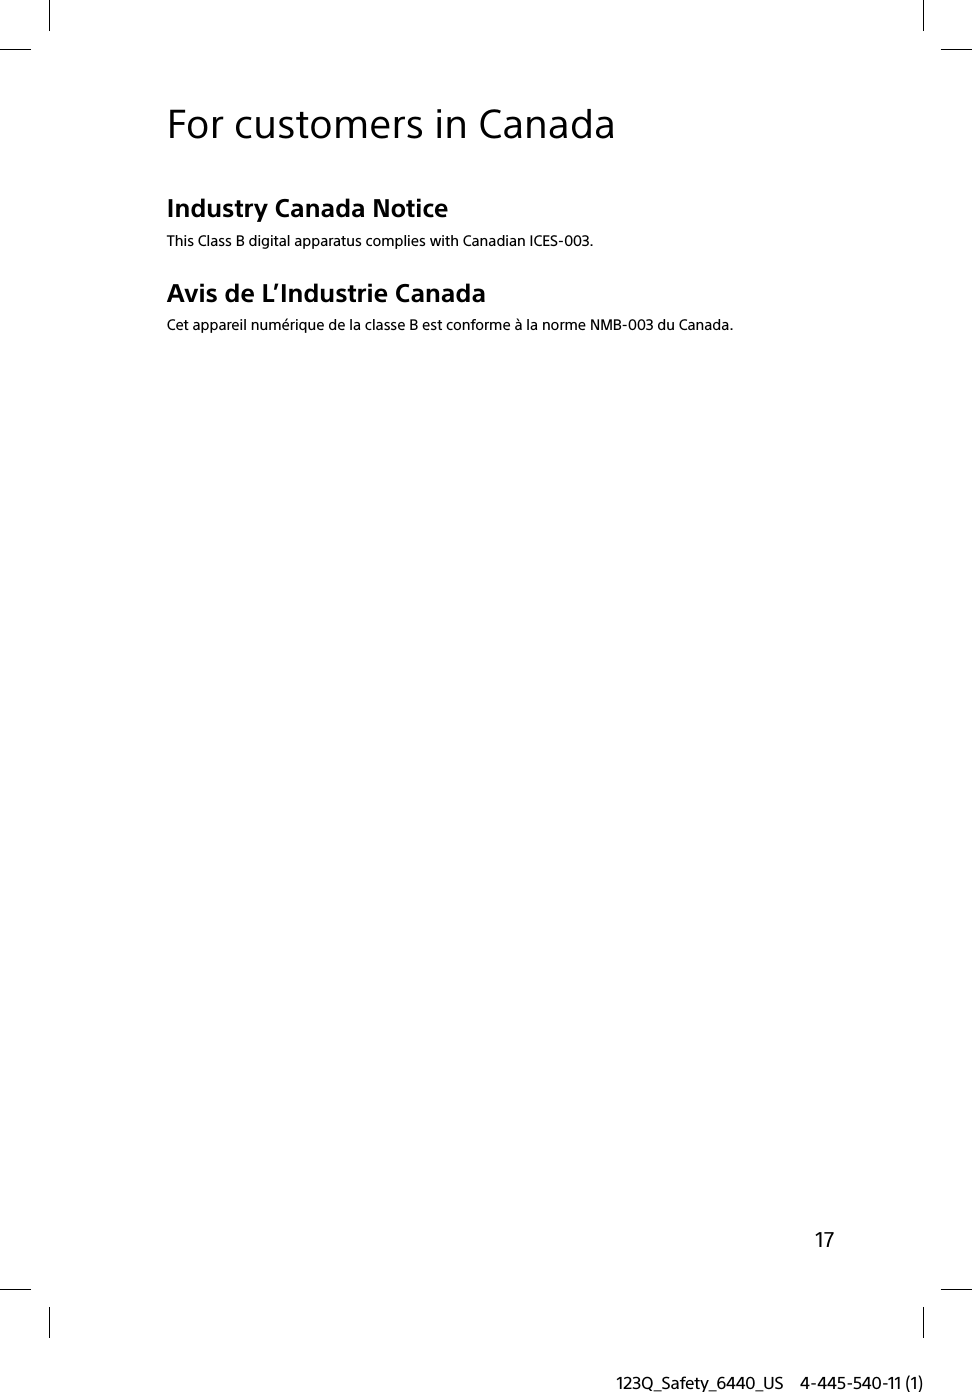 123Q_Safety_6440_US 4-445-540-11 (1)17For customers in CanadaIndustry Canada NoticeThis Class B digital apparatus complies with Canadian ICES-003.Avis de L’Industrie CanadaCet appareil numérique de la classe B est conforme à la norme NMB-003 du Canada.